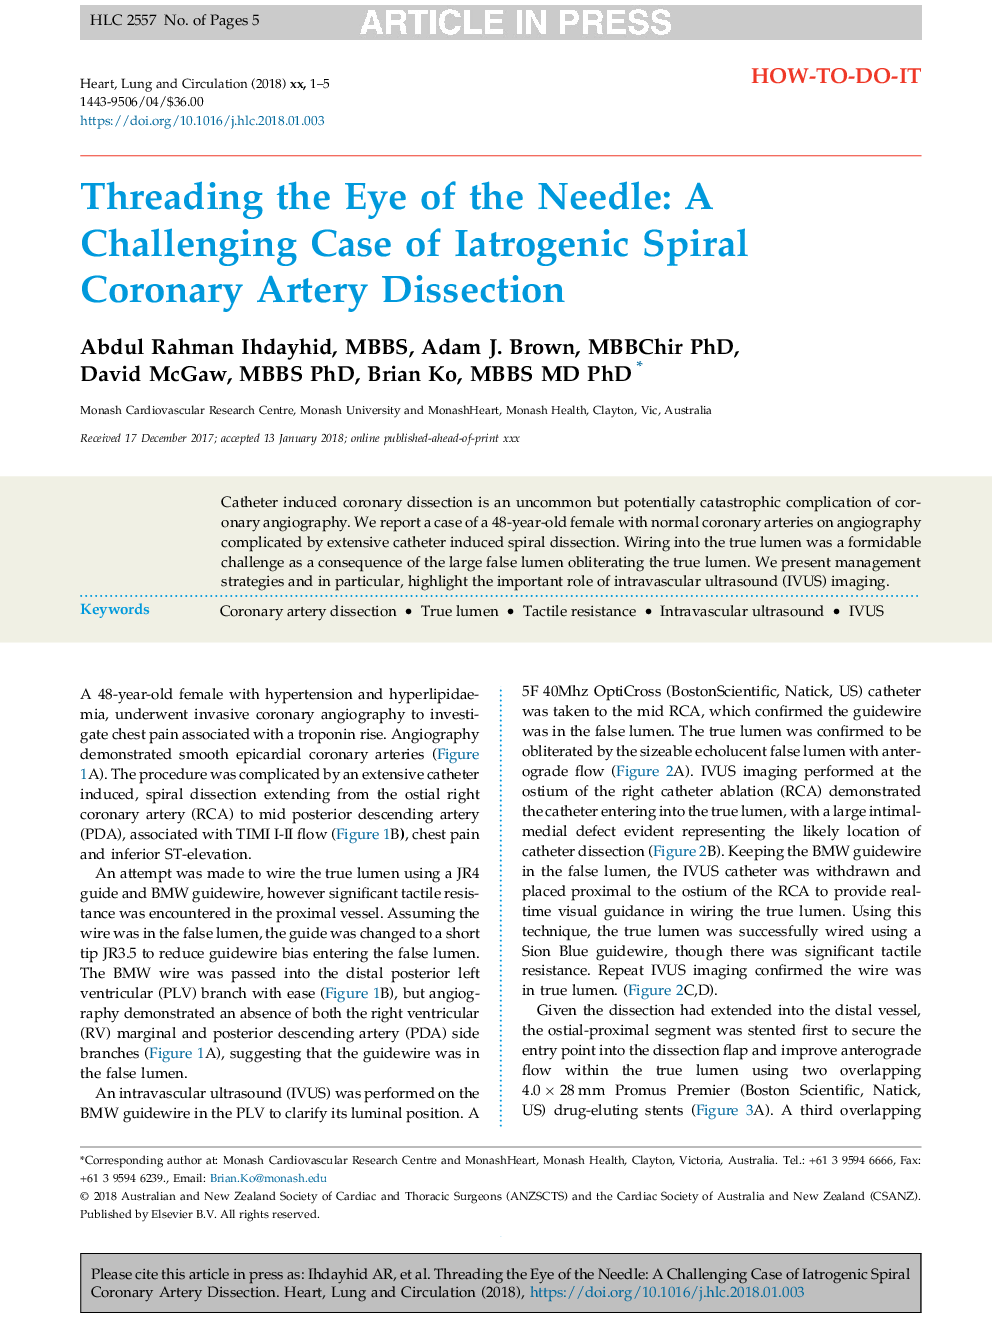 ریختن چشم سوزن: یک مورد چالش برانگیز انسداد عروق کرونر اسپیرال ایدروژنیک 